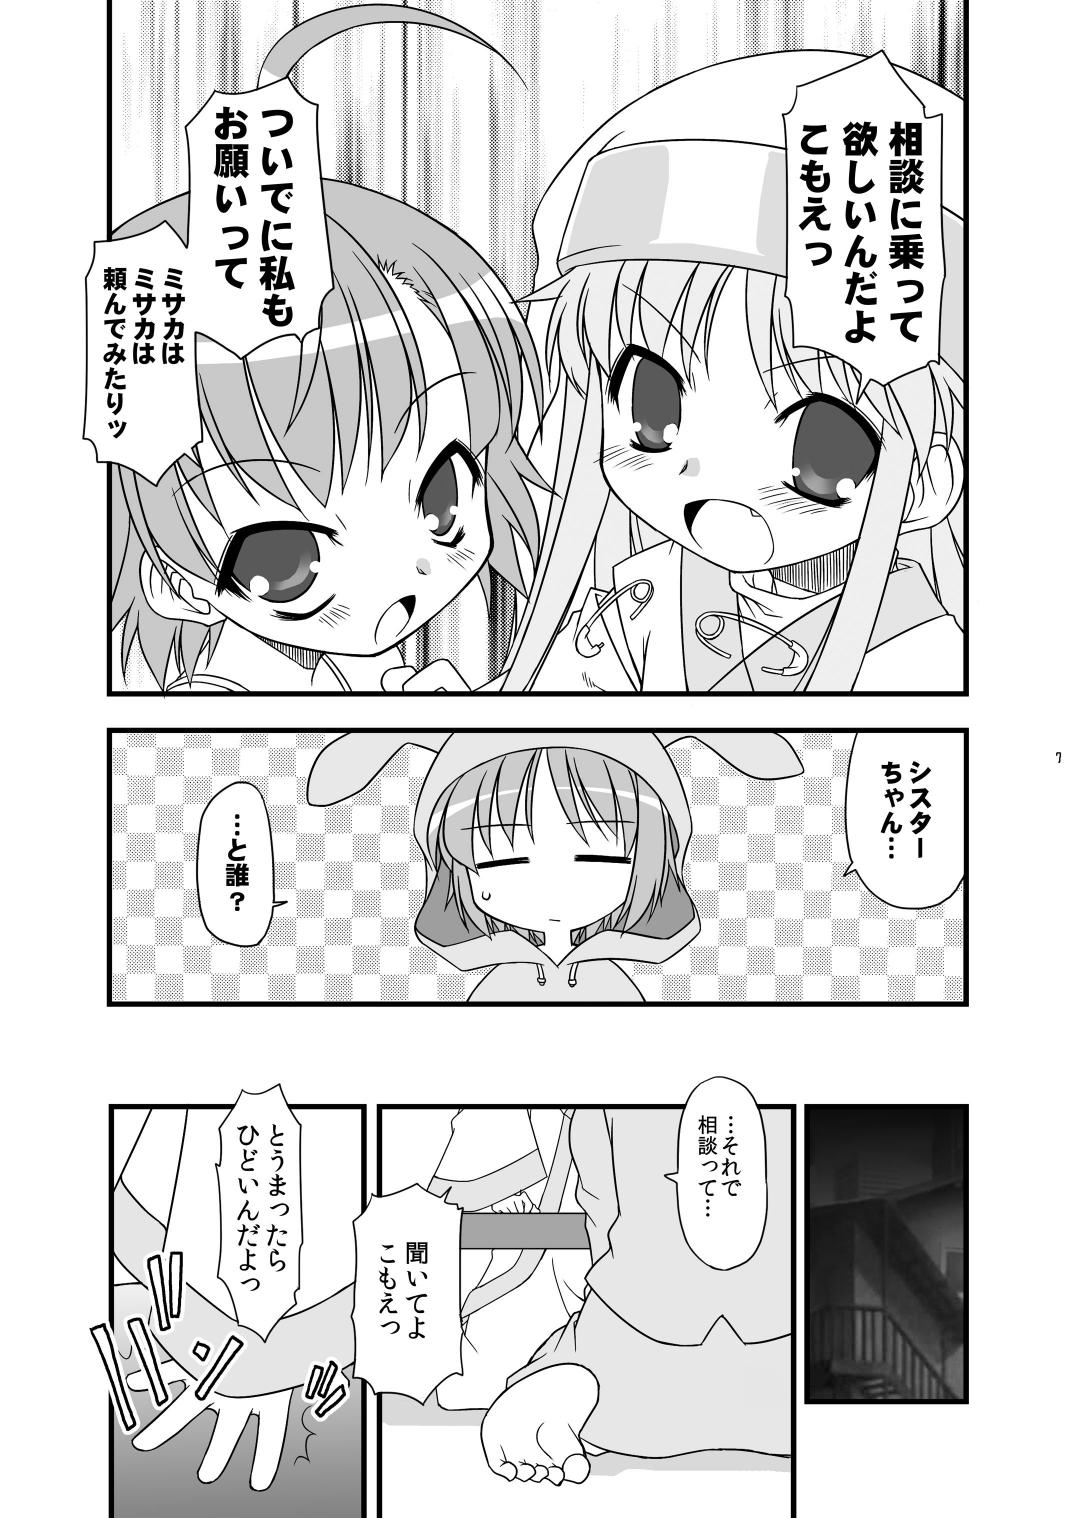 Women Sucking Dicks KA+SHI+MA+SHI=INDEX! - Toaru majutsu no index Amateur Cumshots - Page 8